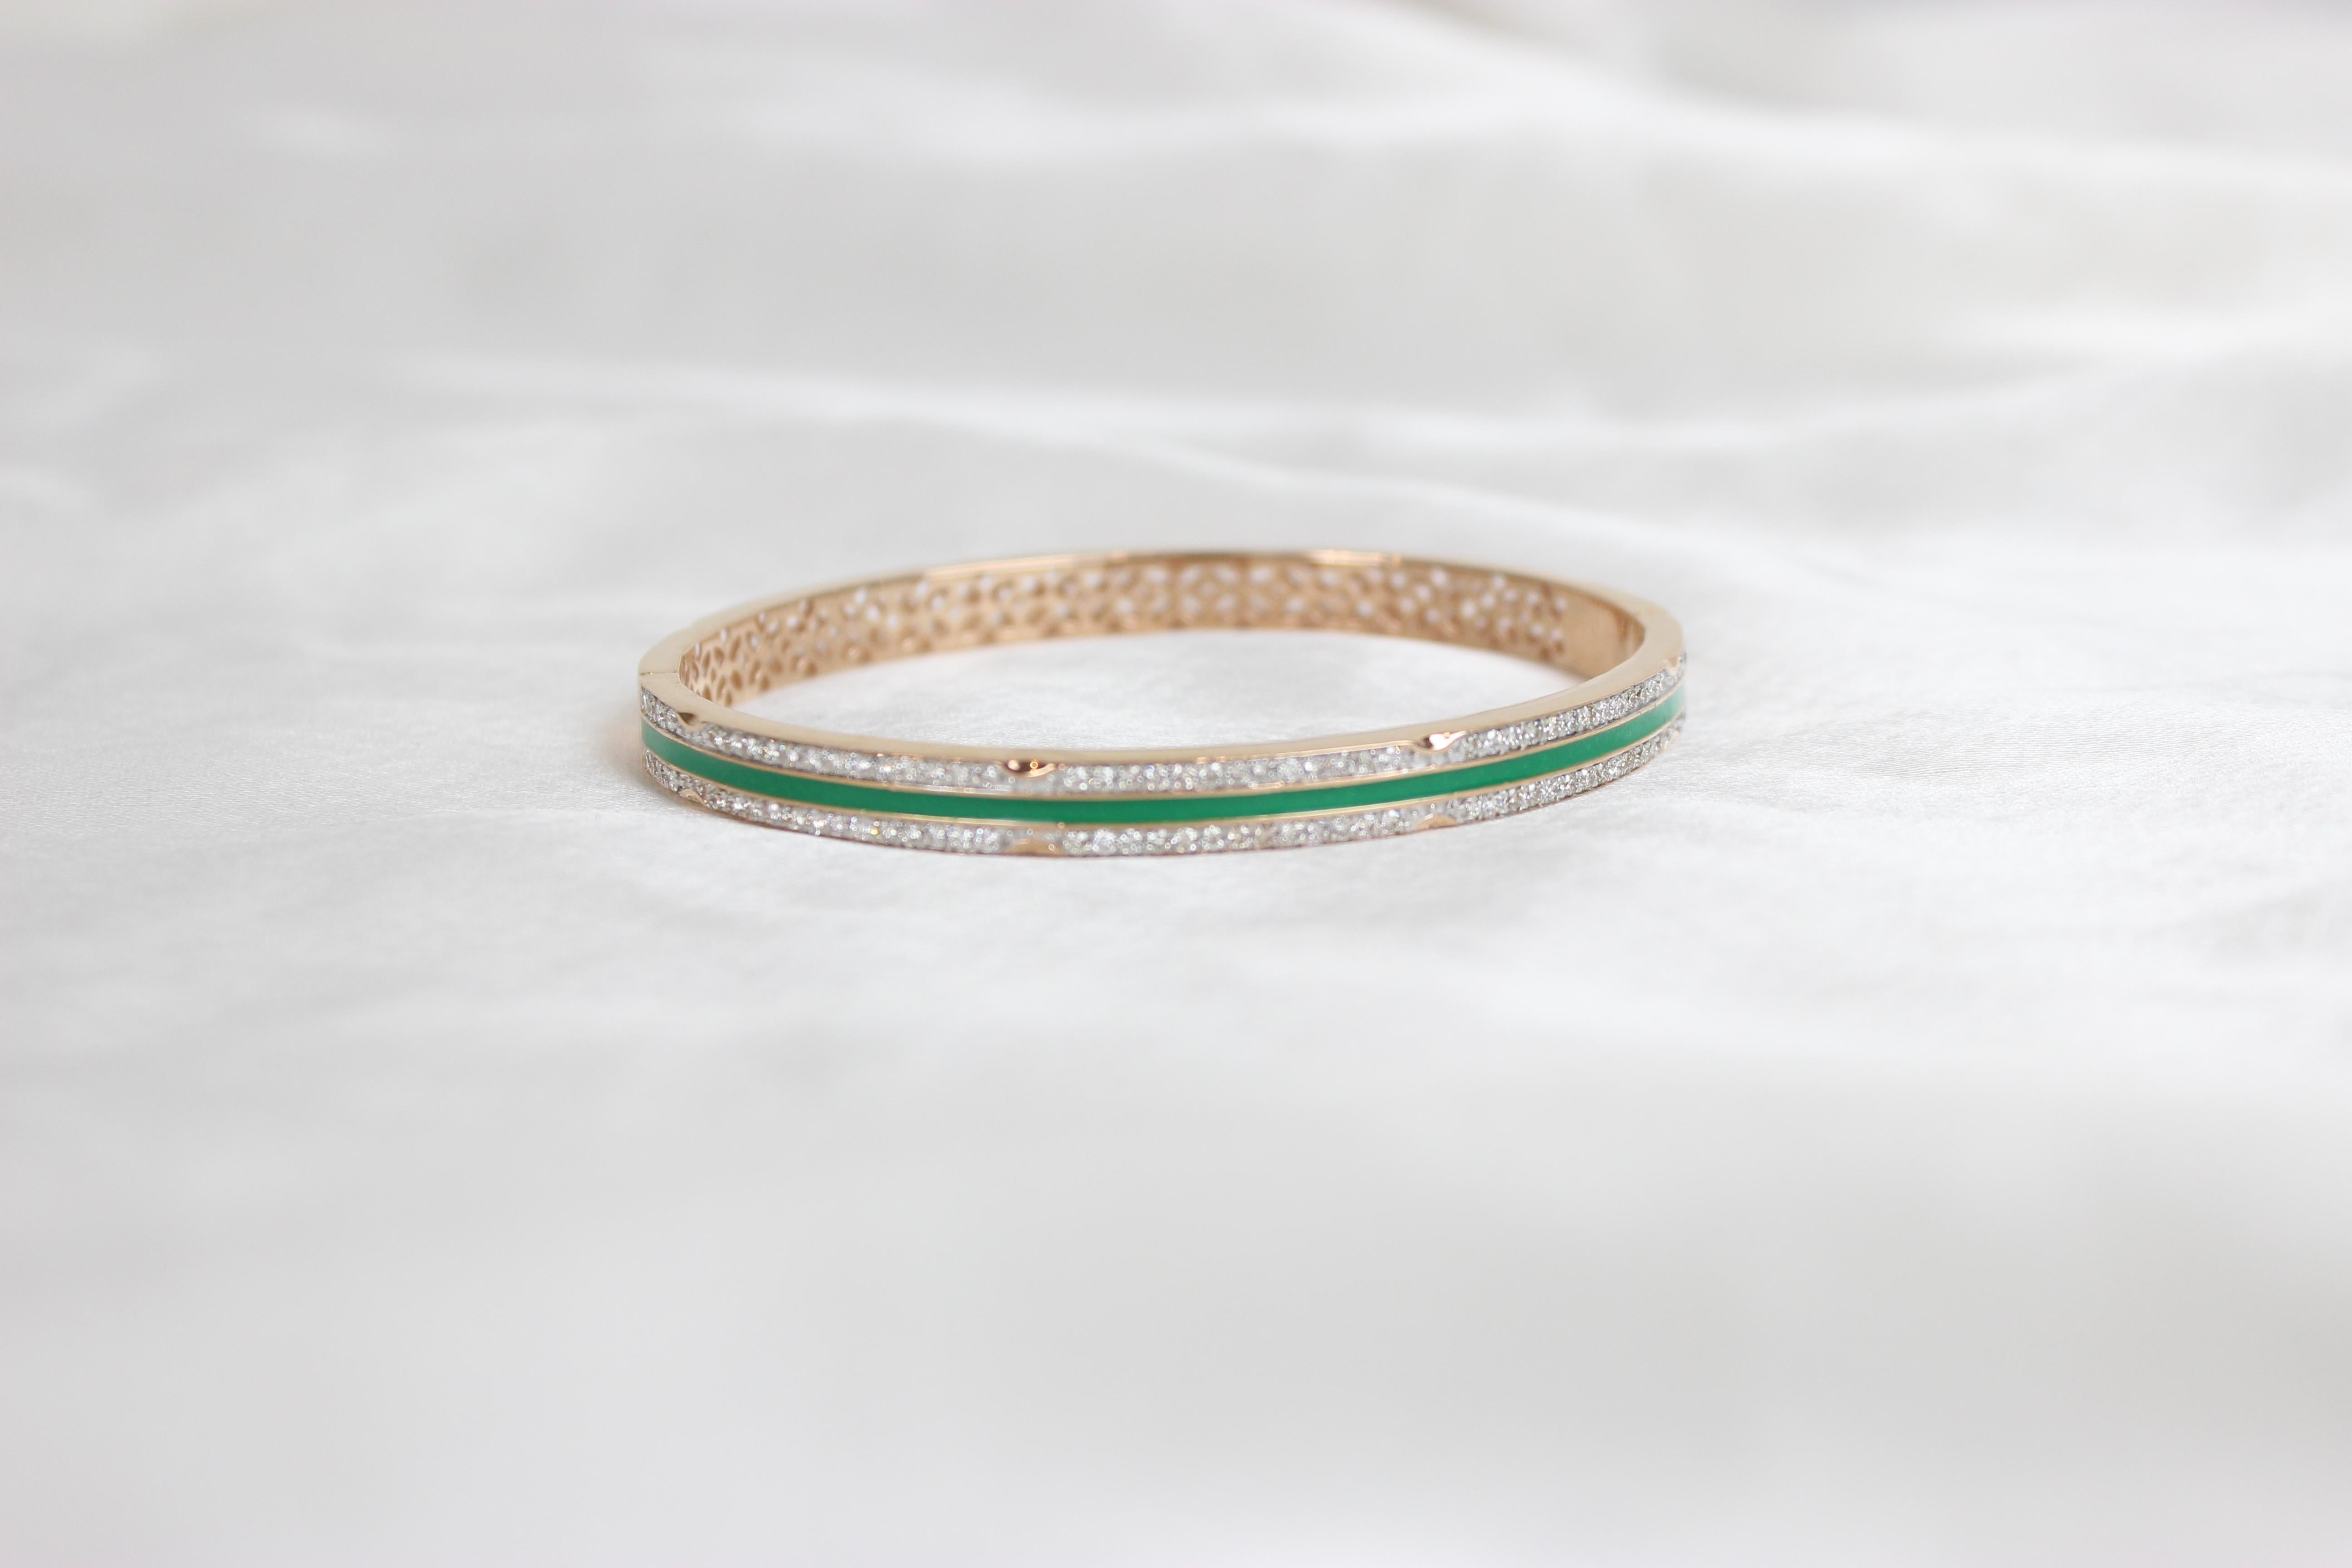 Le bracelet en filigrane de diamants et émail vert en or massif 18 carats est un bijou à couper le souffle qui allie la complexité du travail en filigrane à la beauté des diamants et de l'émail vert. Ce bracelet est un véritable témoignage de la